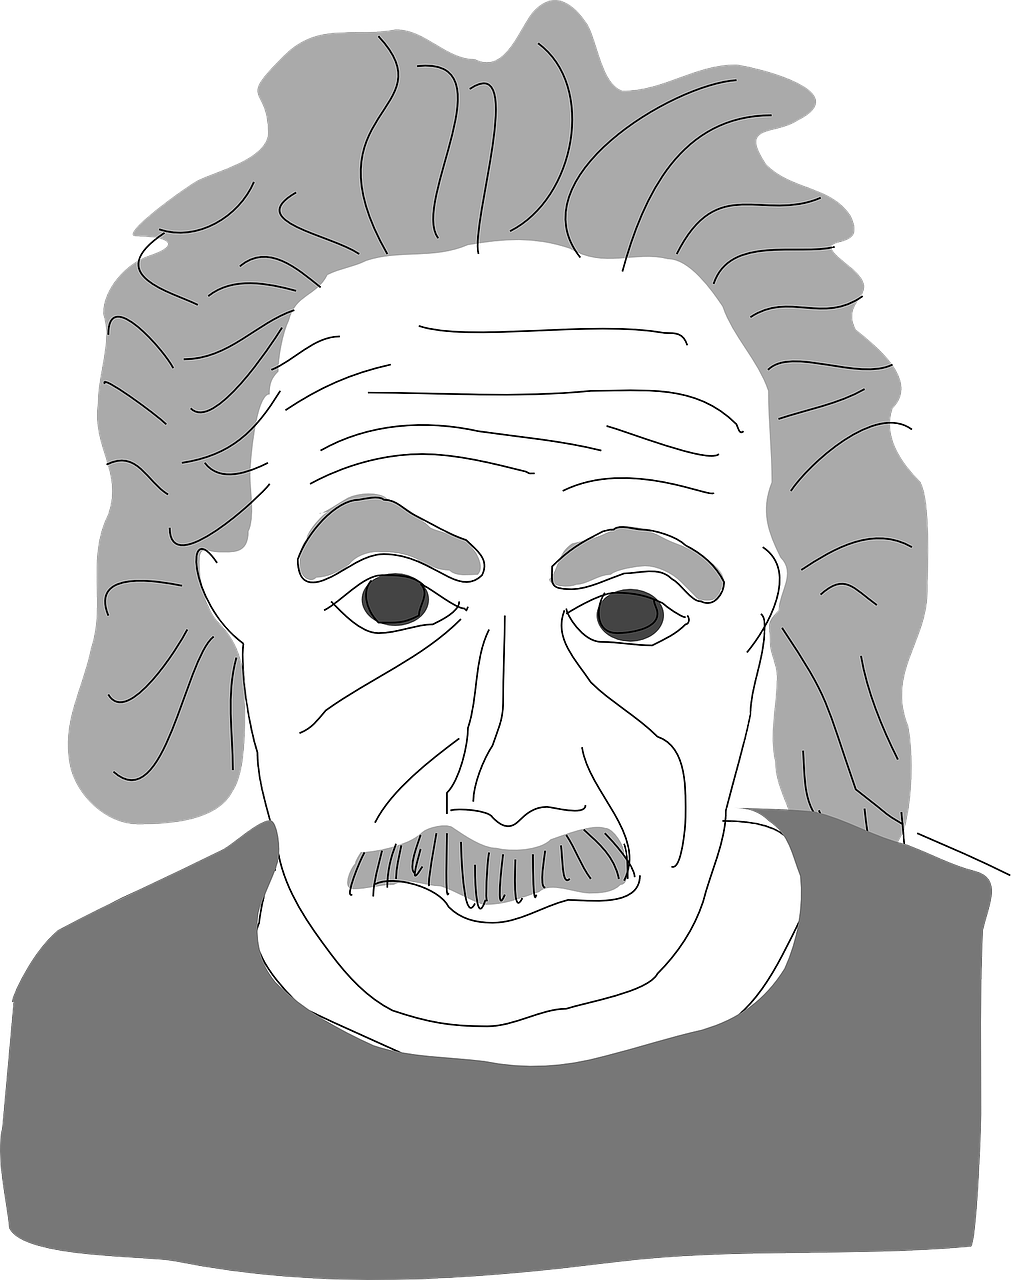 Albertas Einšteinas, Reliatyvumo Teorija, Mokslininkas, Mokslas, Fizika, E Mc2, Genijus, Energija, Reliatyvumo Teorija, Teorija